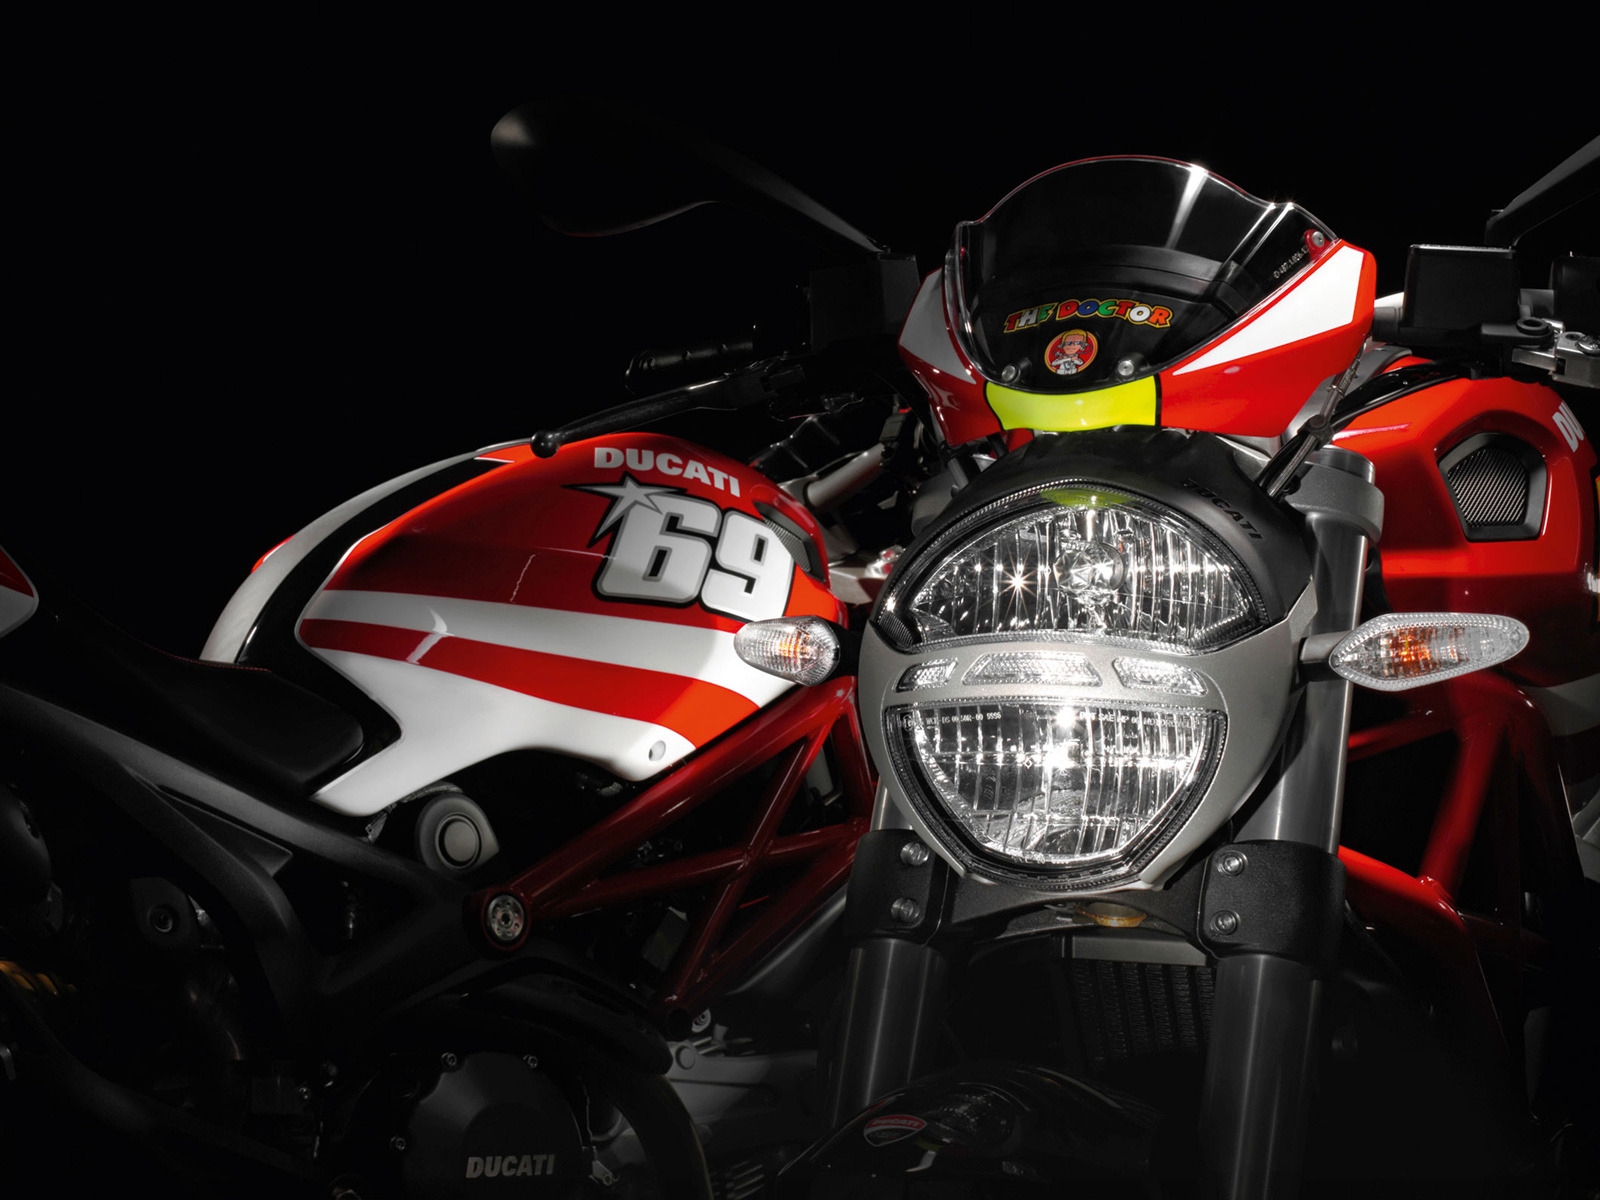 Ducati Rossi and Hayden Replica Ducati for 1600 x 1200 resolution